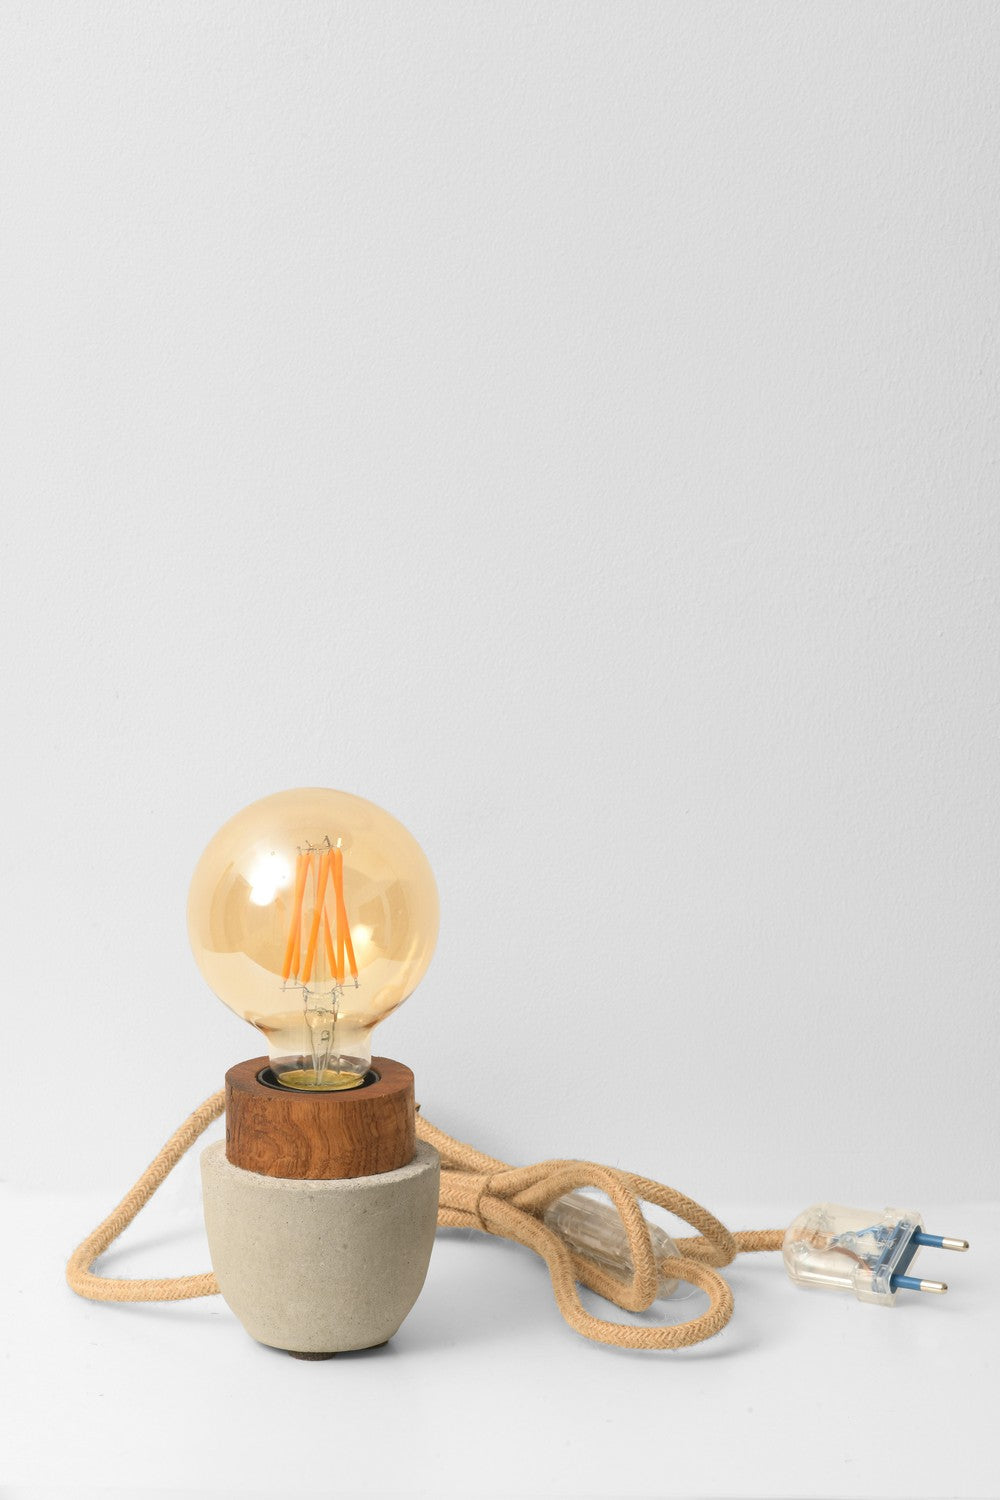 LAMPE |Petit modèle